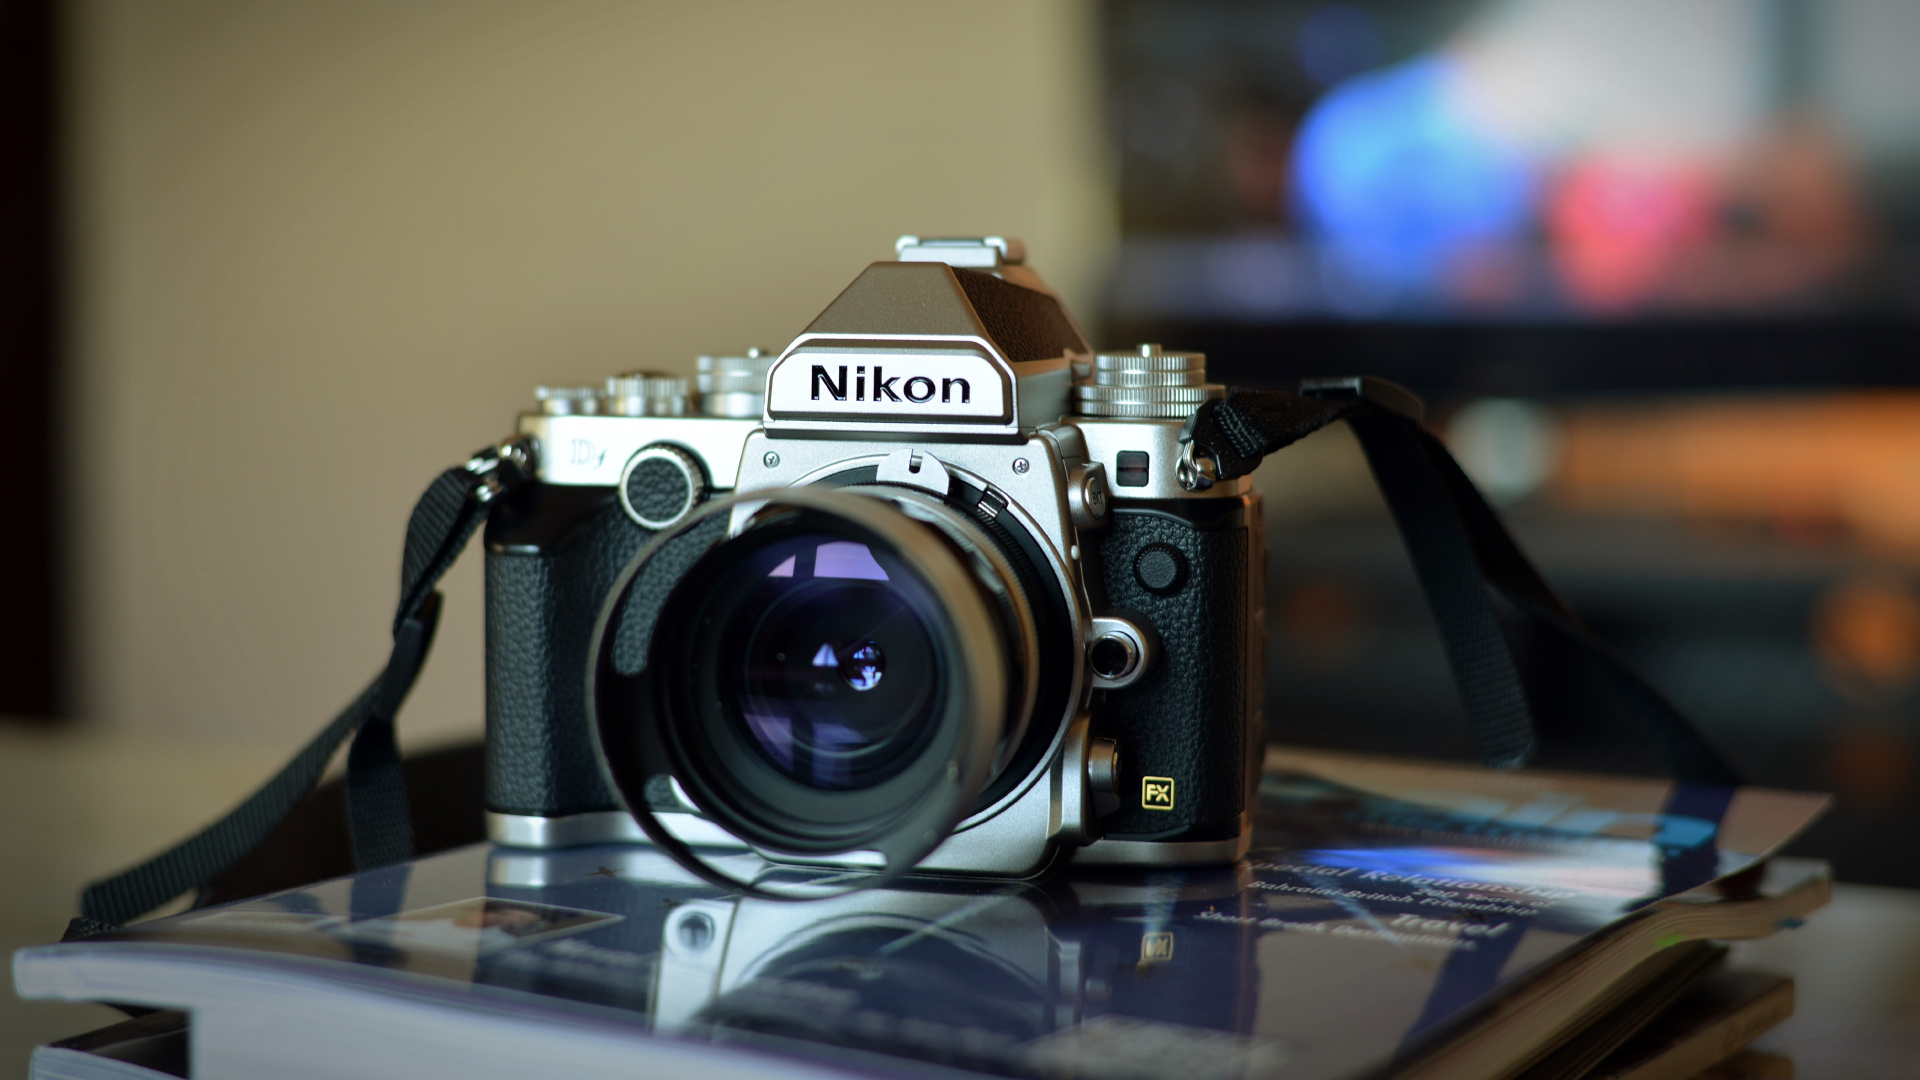 尼康, 光学照相机, 拍摄像头, 摄像机的附件, 数字照相机 壁纸 1920x1080 允许